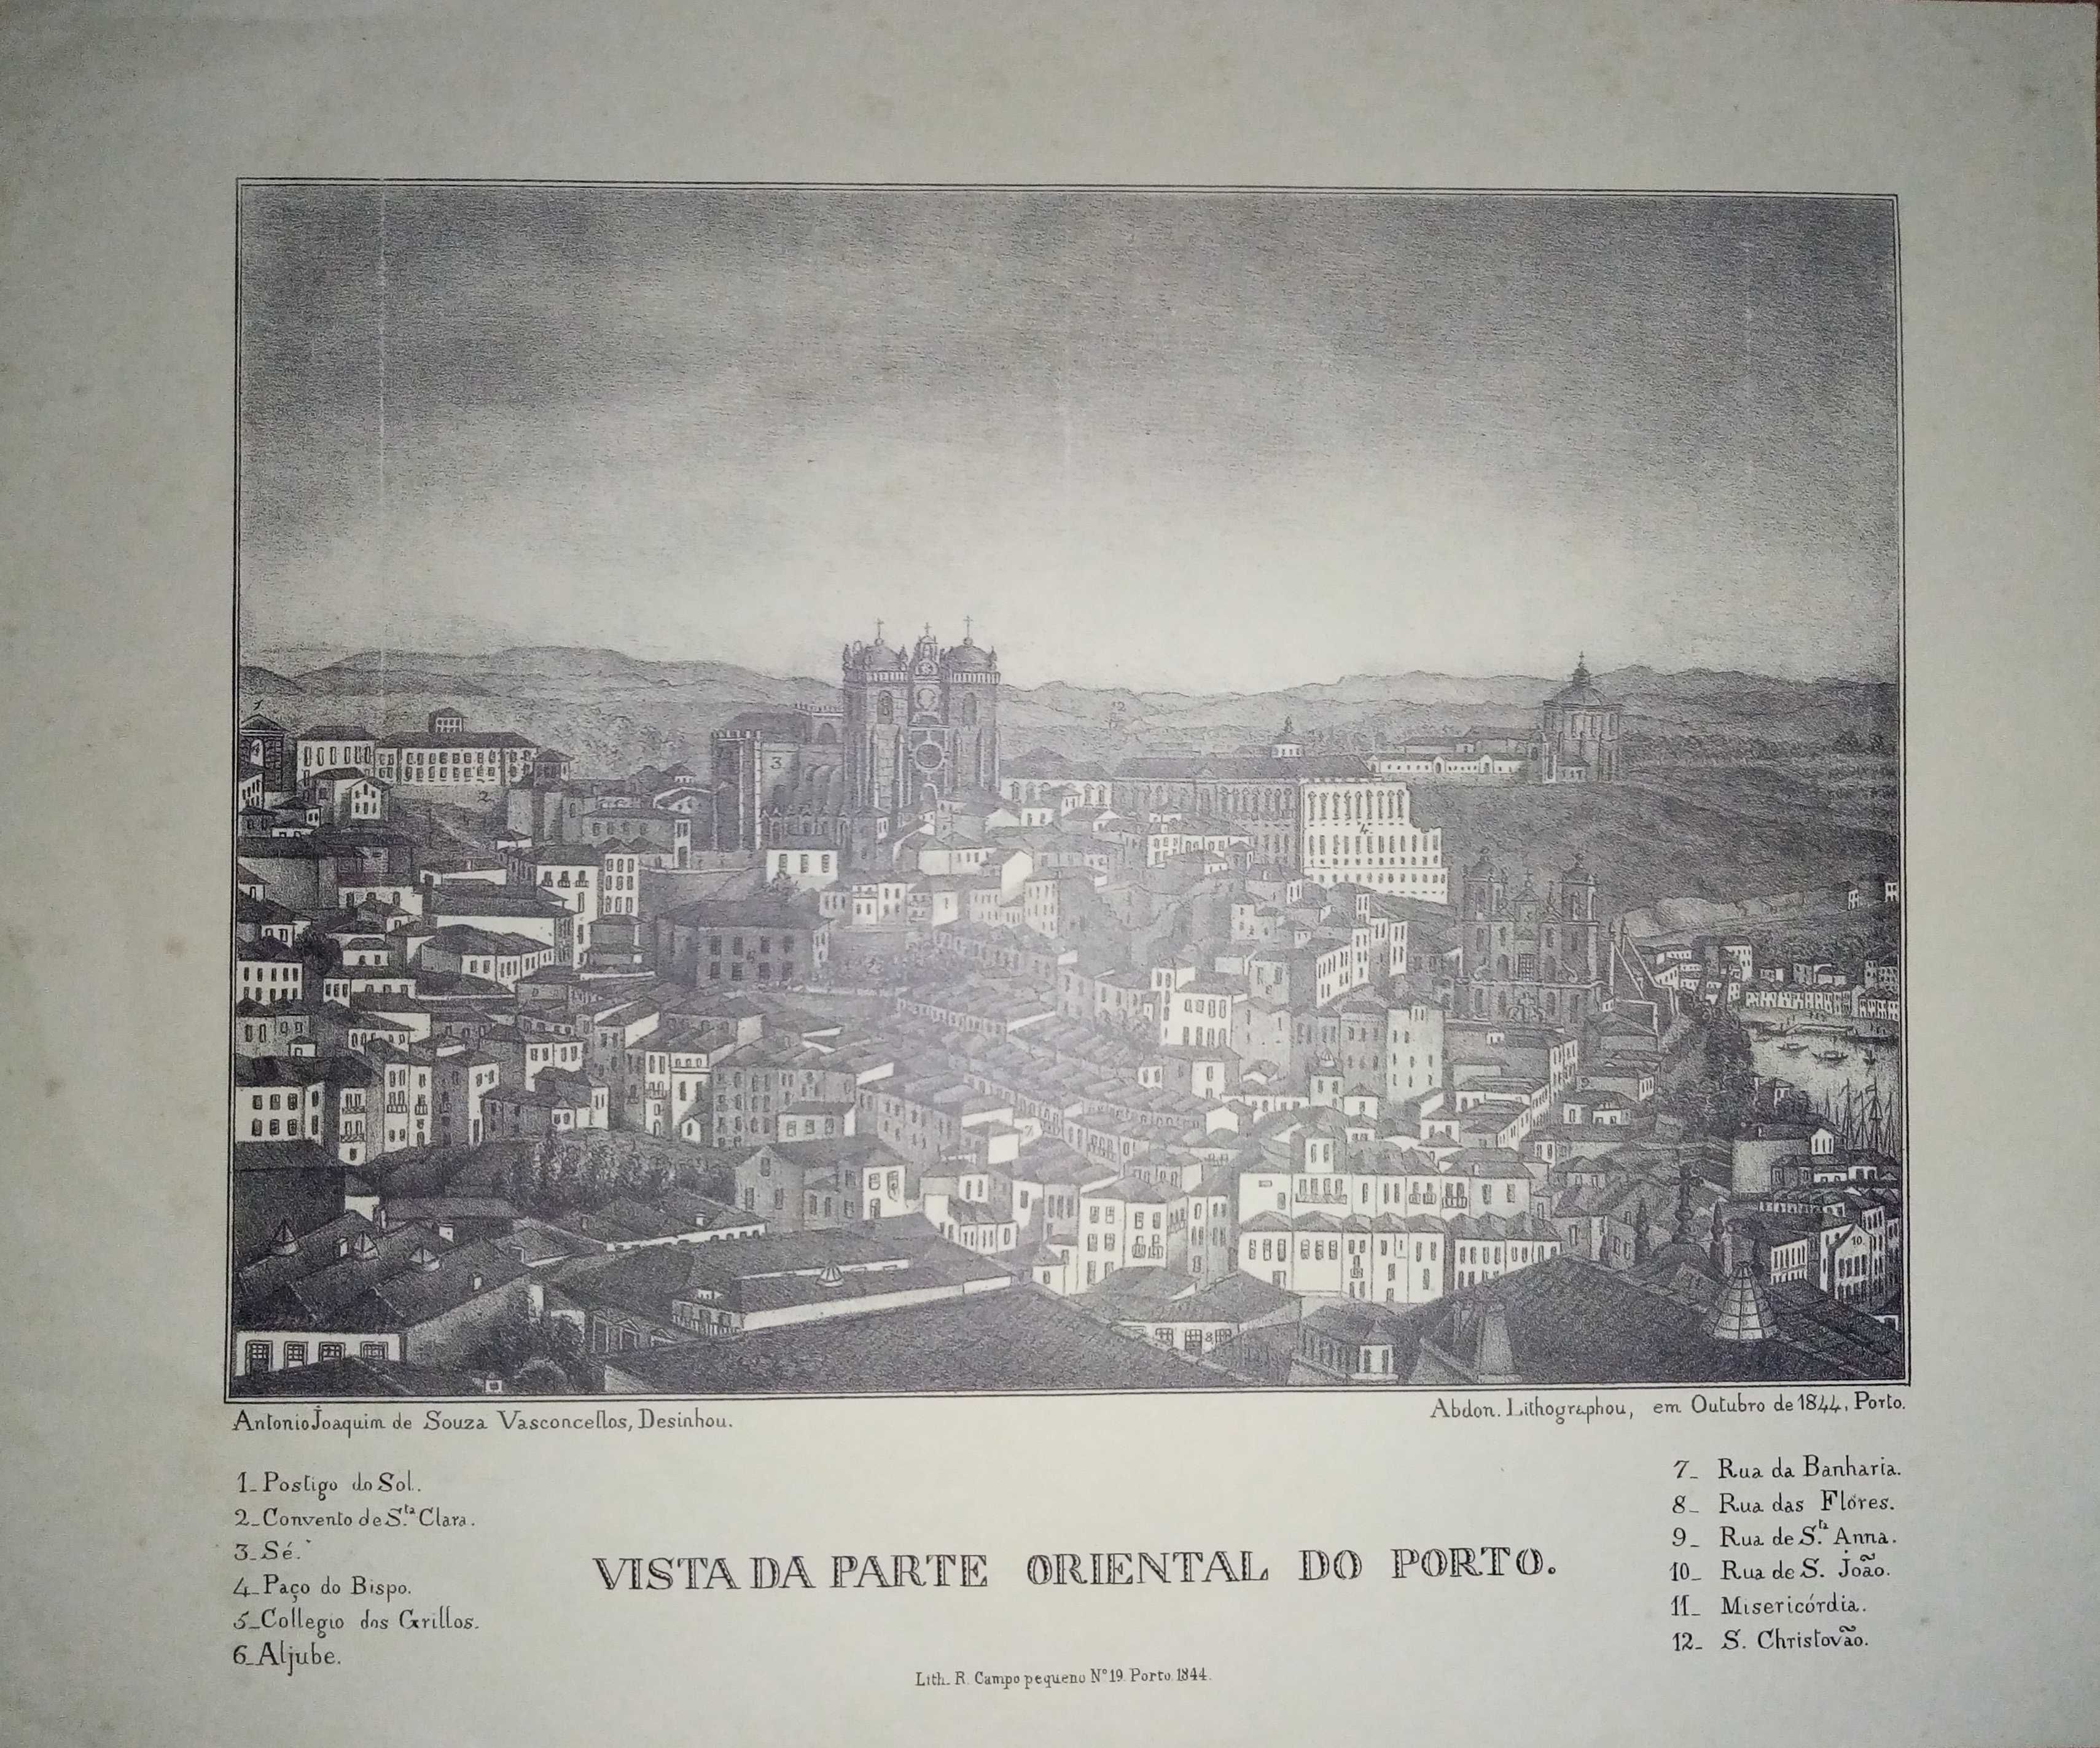 Imagem da cidade do Porto antigo